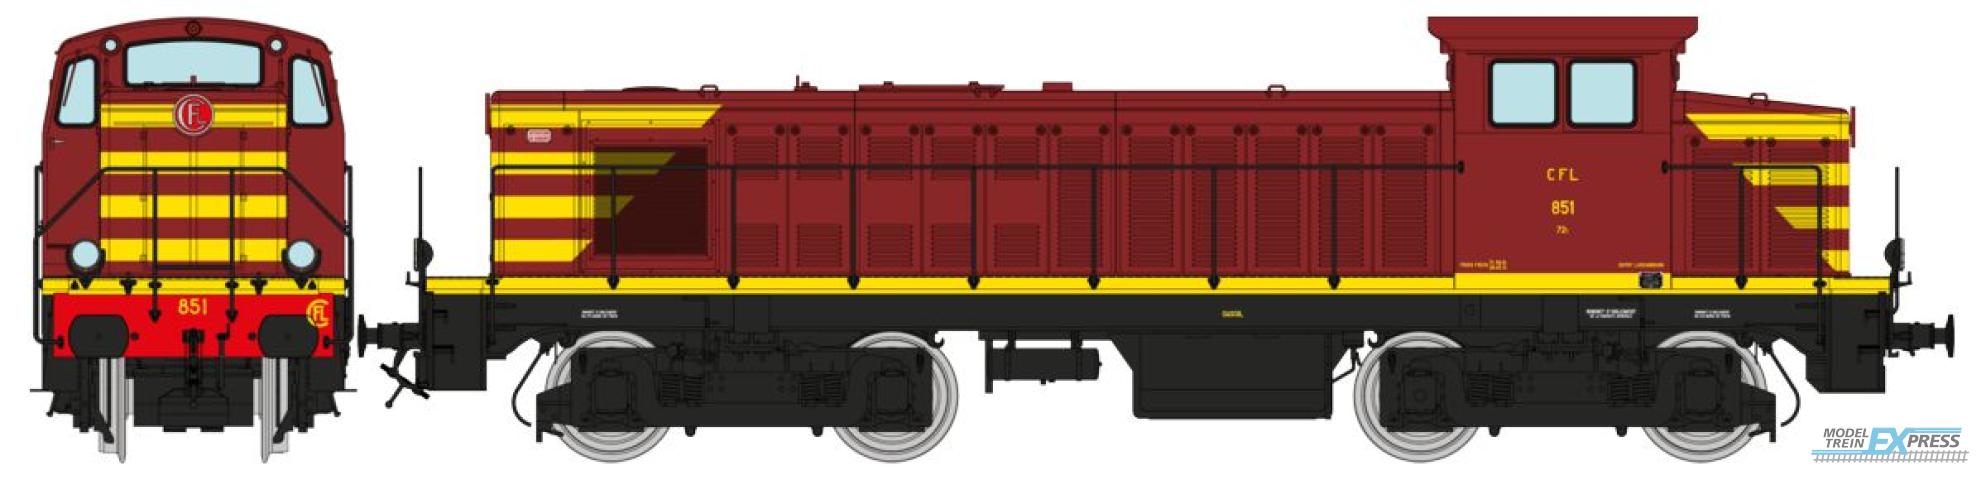 REE models JM-011 Diesel Locomotive 851, Origin Livery, CFL Era III - ANALOG